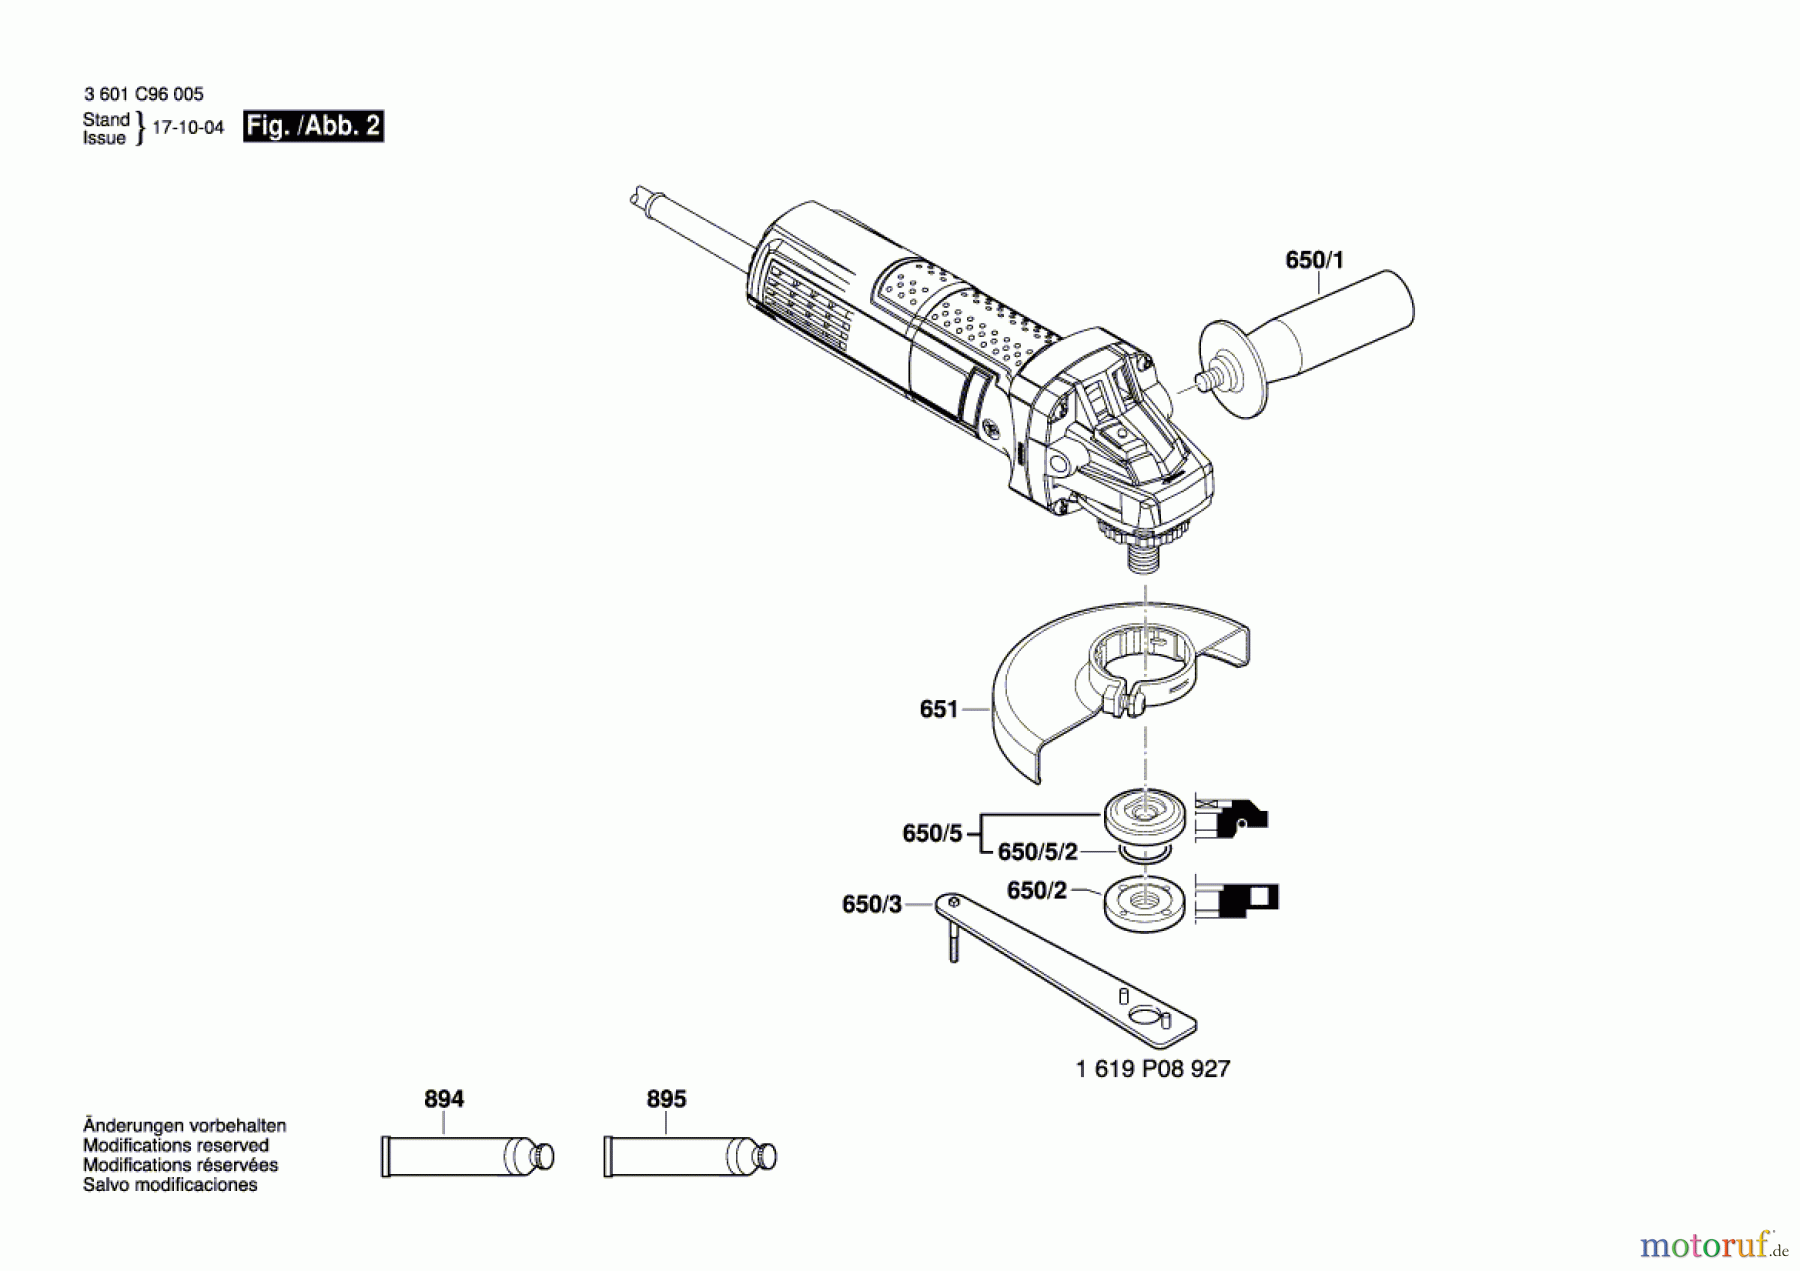  Bosch Werkzeug Winkelschleifer GWS 900 Seite 2